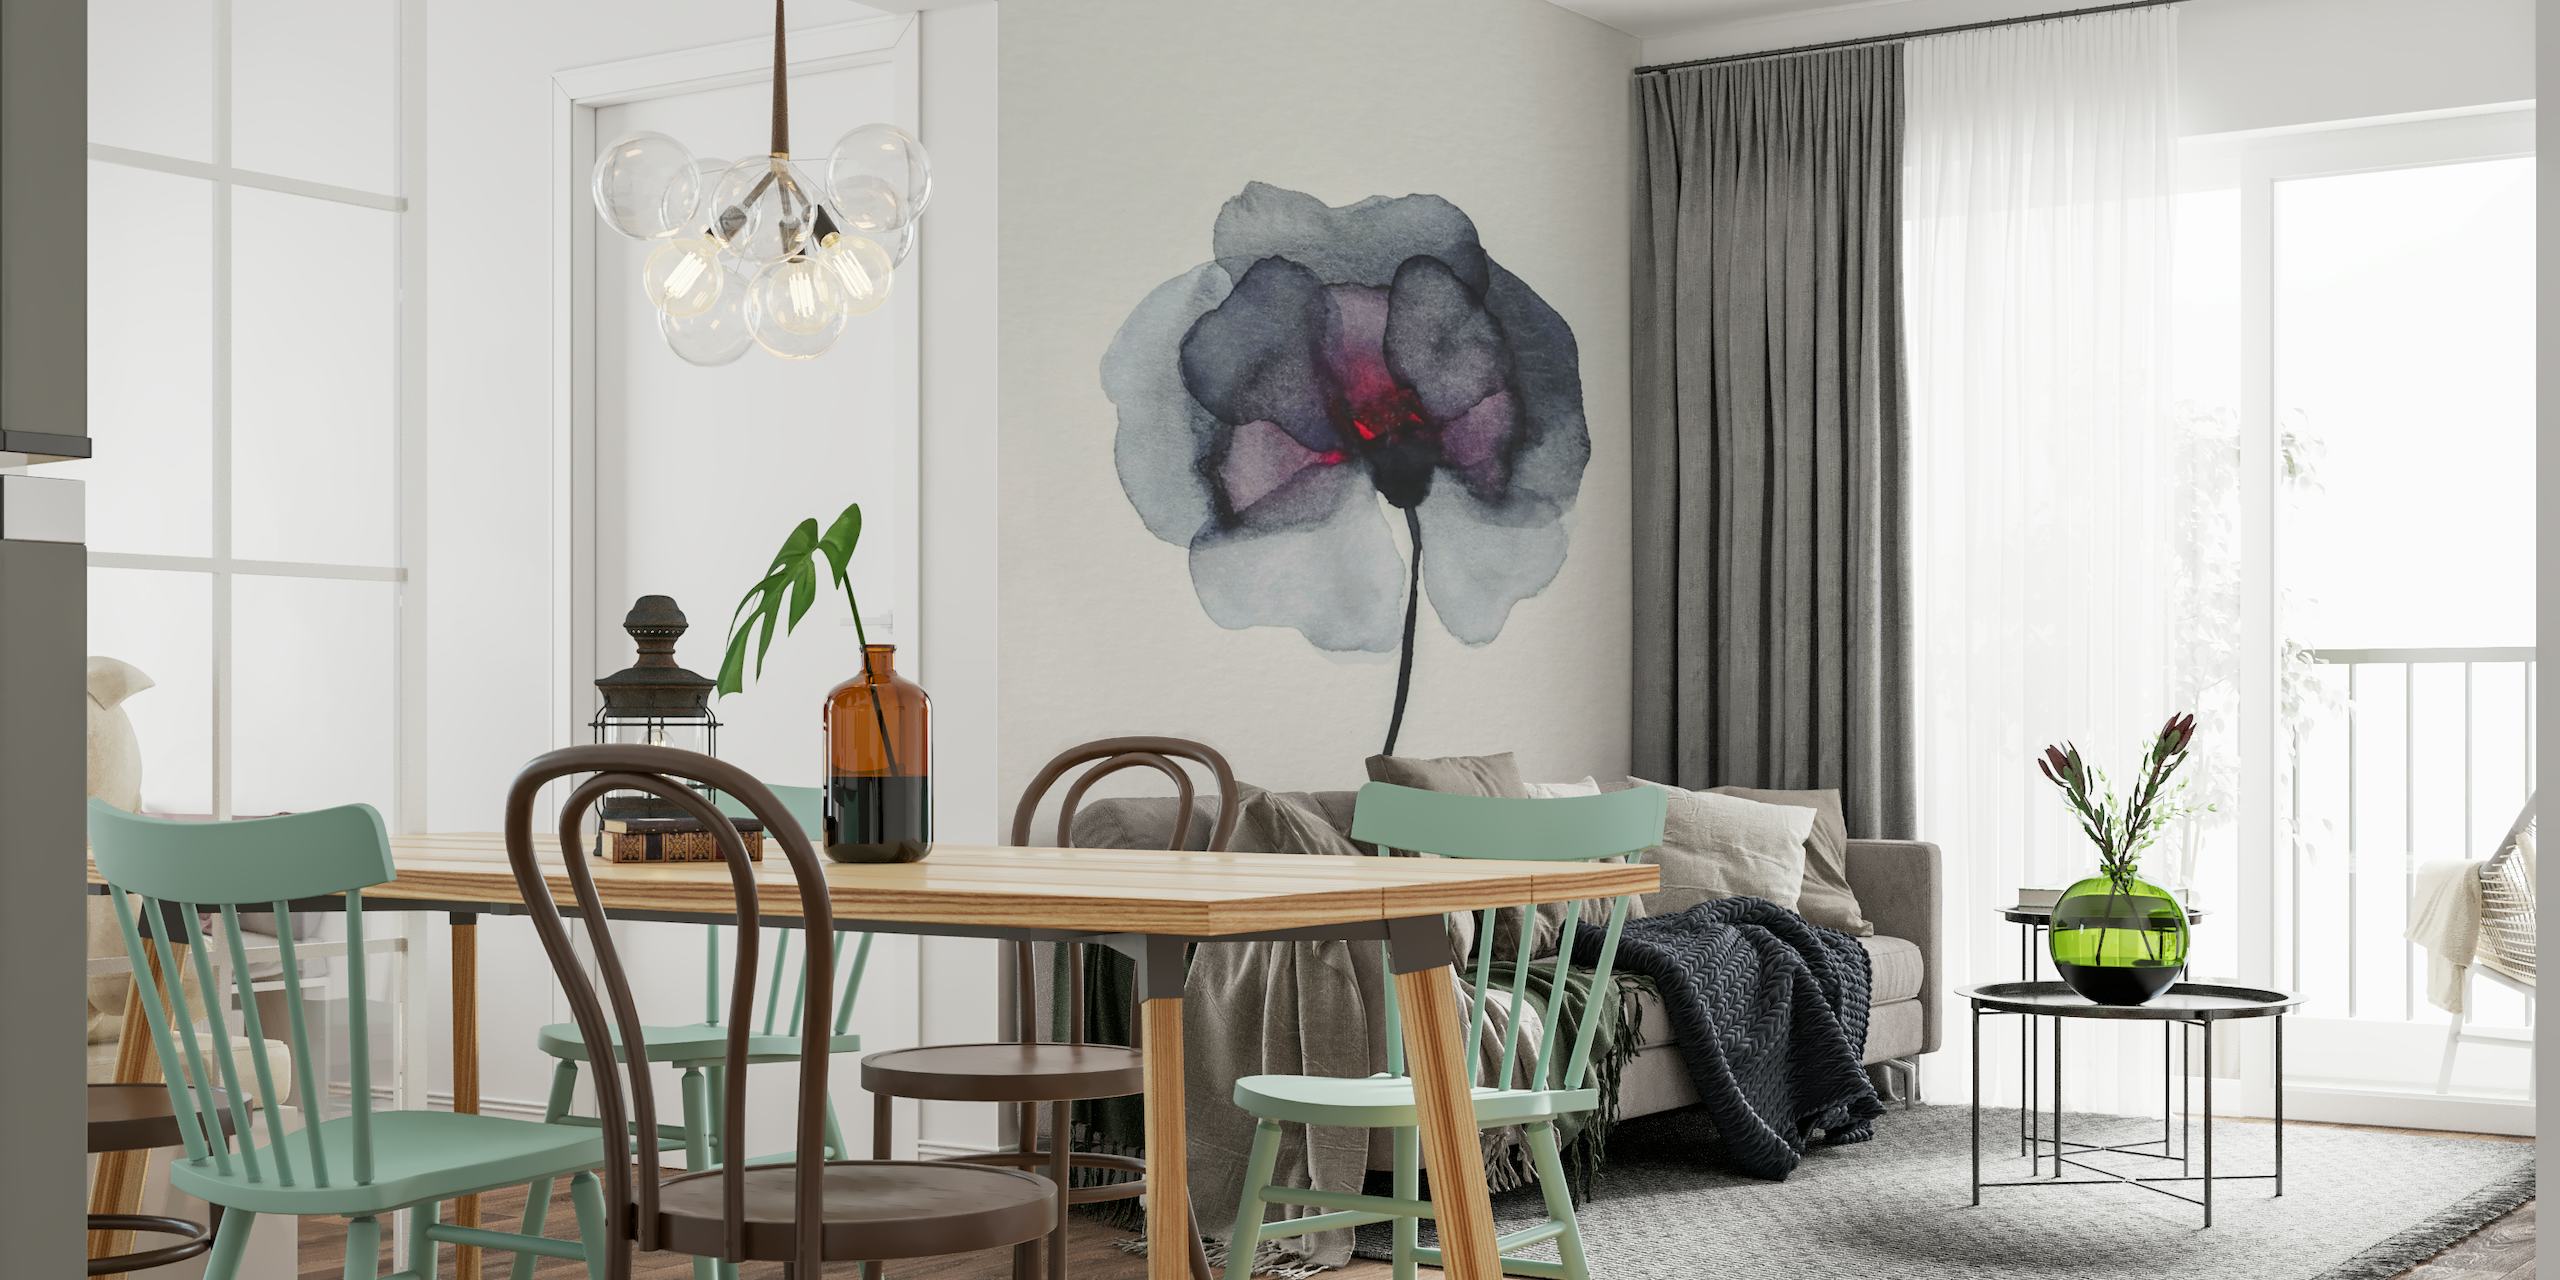 Fotomural vinílico de parede com pintura floral azul escuro e uma única flor elegante